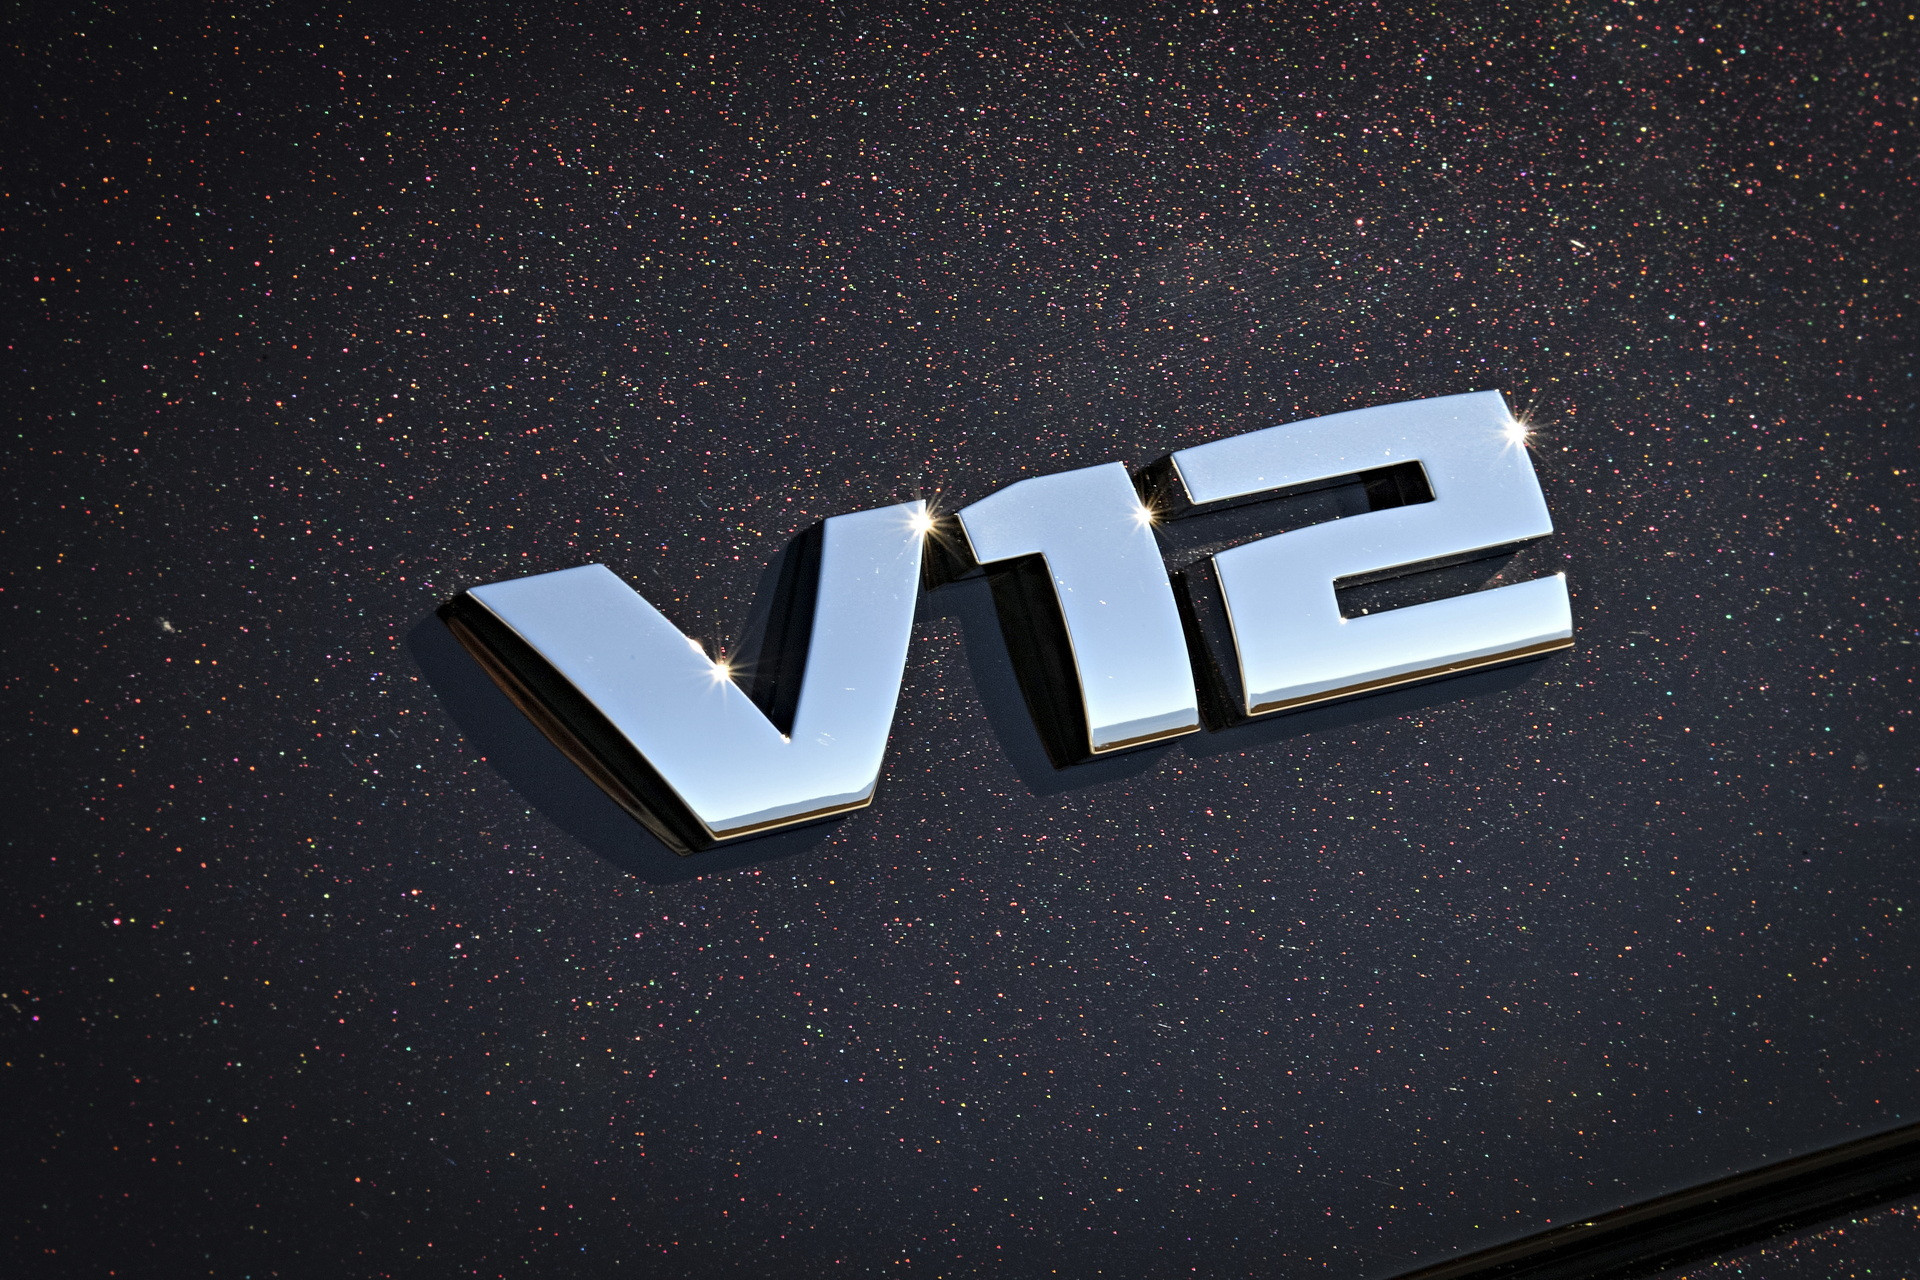 Phiên bản BMW 760i cuối cùng sử dụng động cơ V12 sẽ chỉ có 12 cái được sản xuất